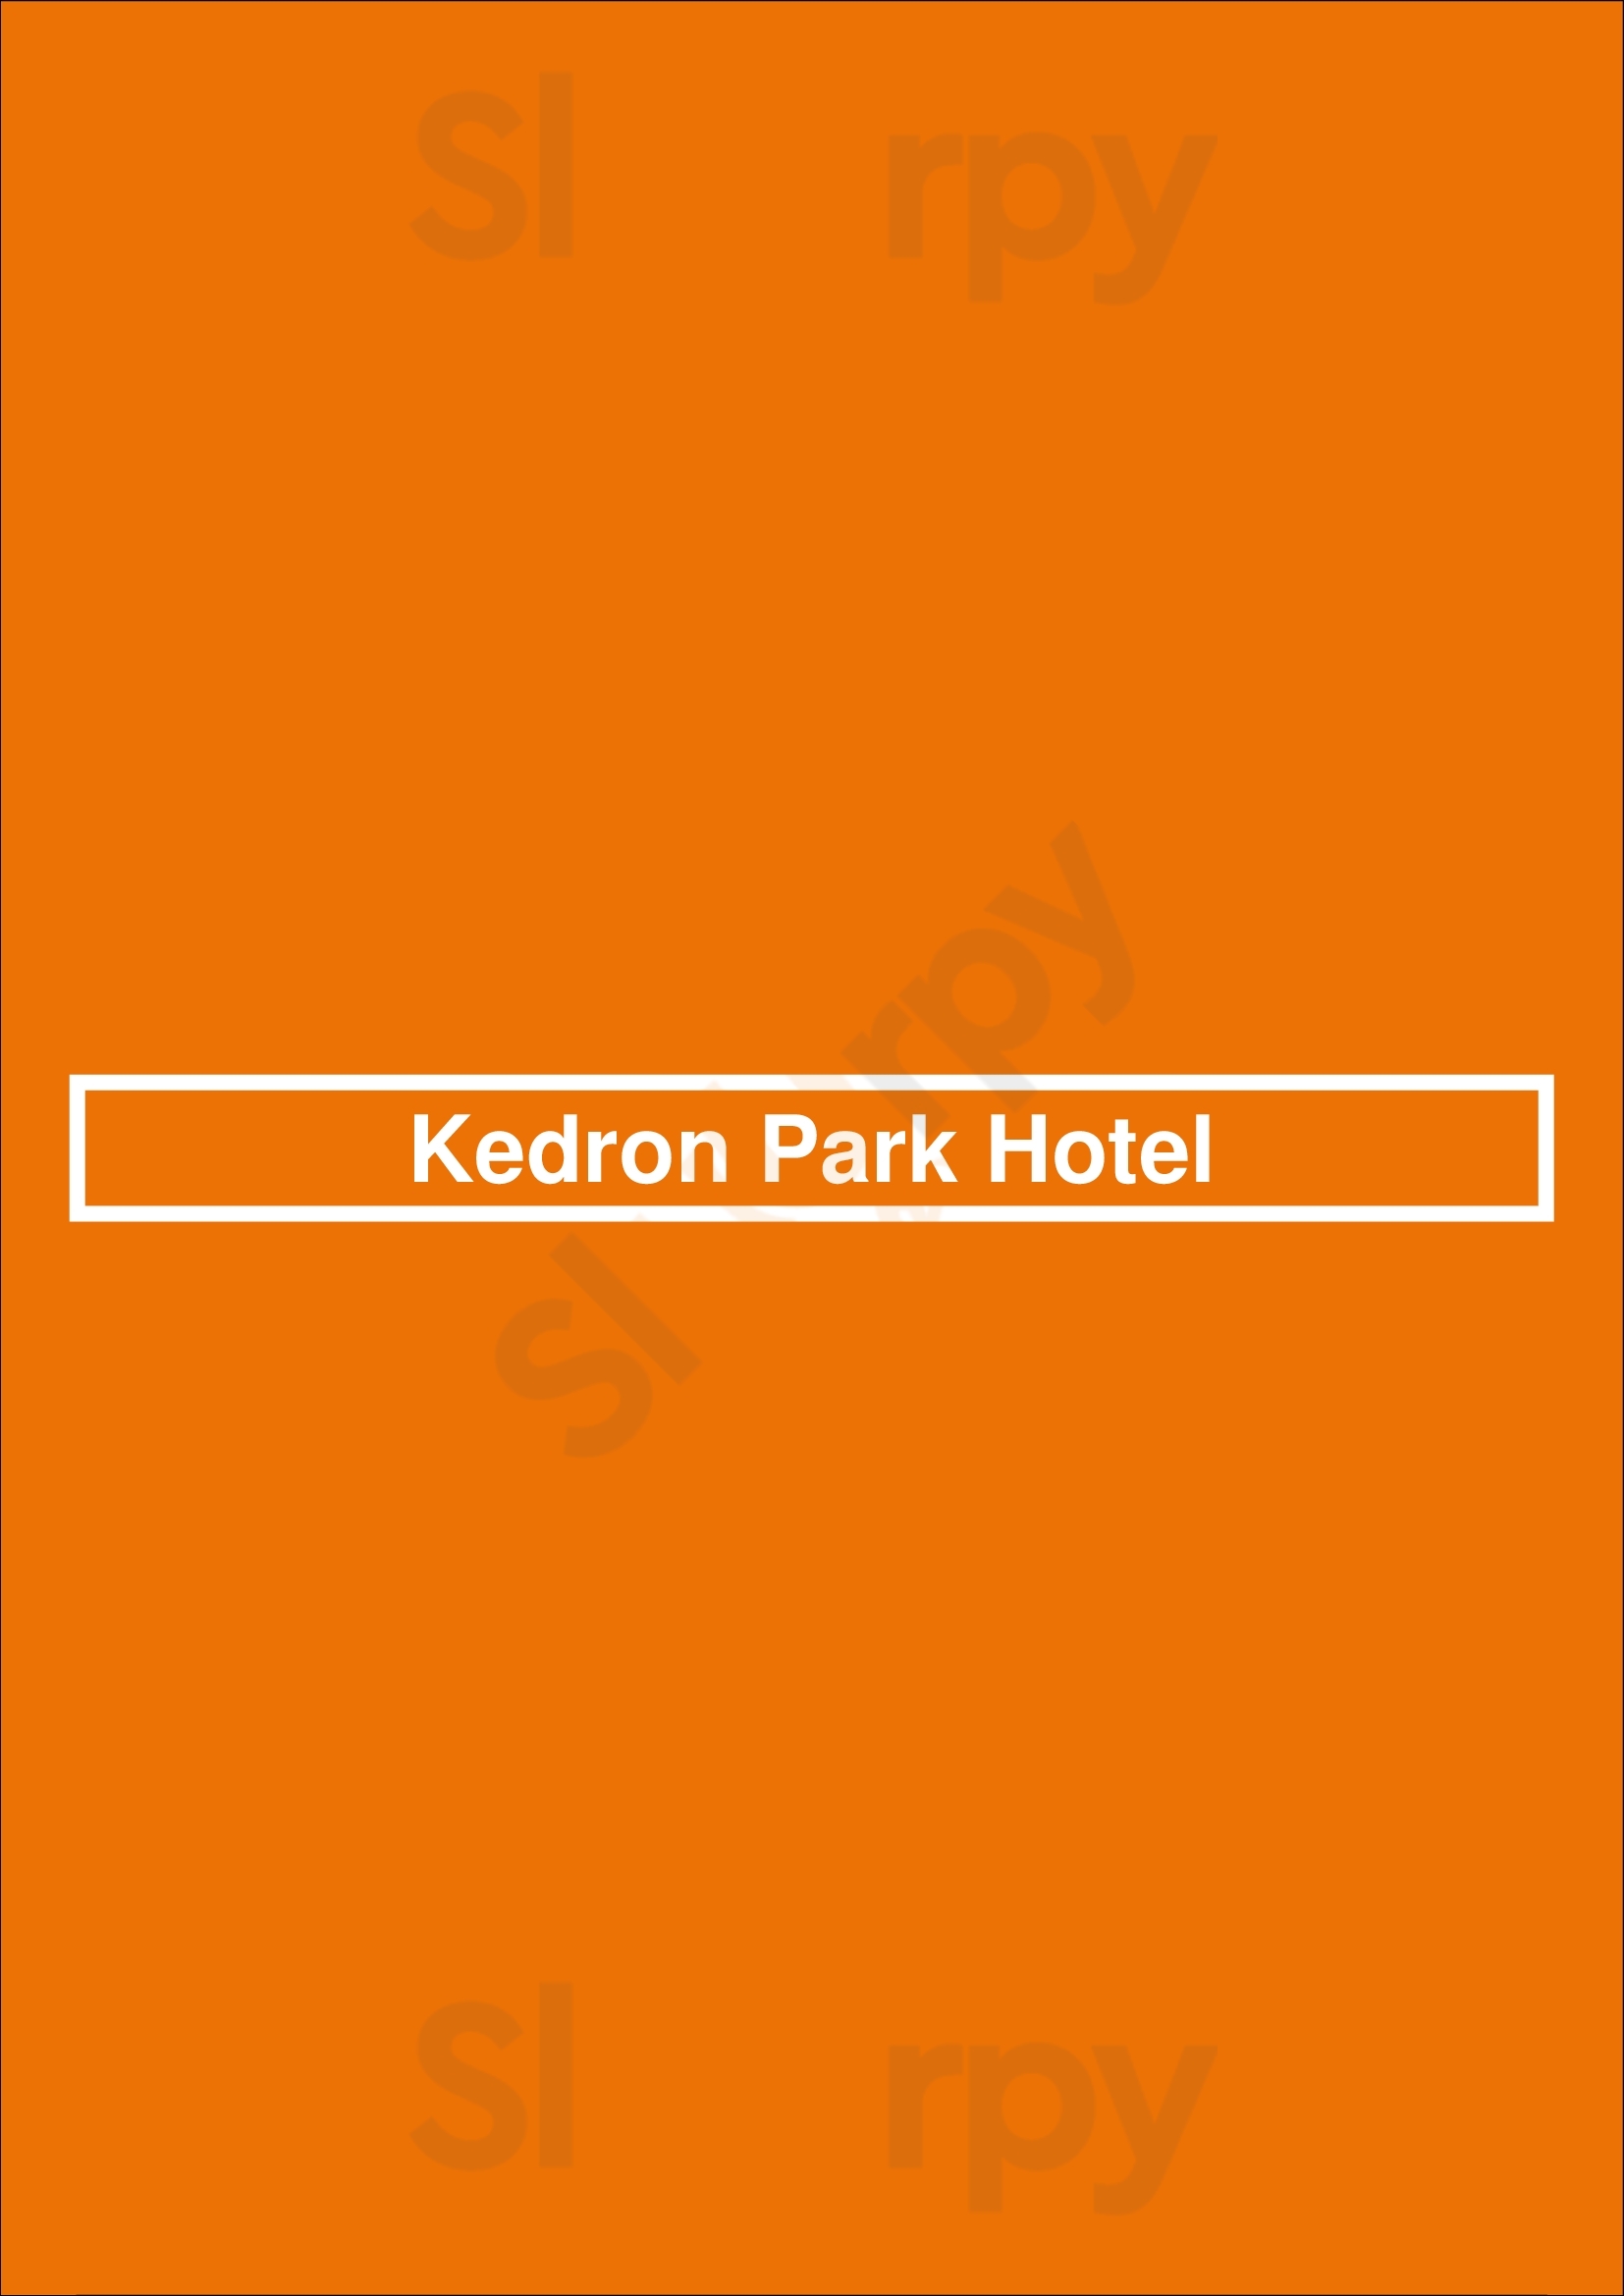 Kedron Park Hotel Brisbane Menu - 1